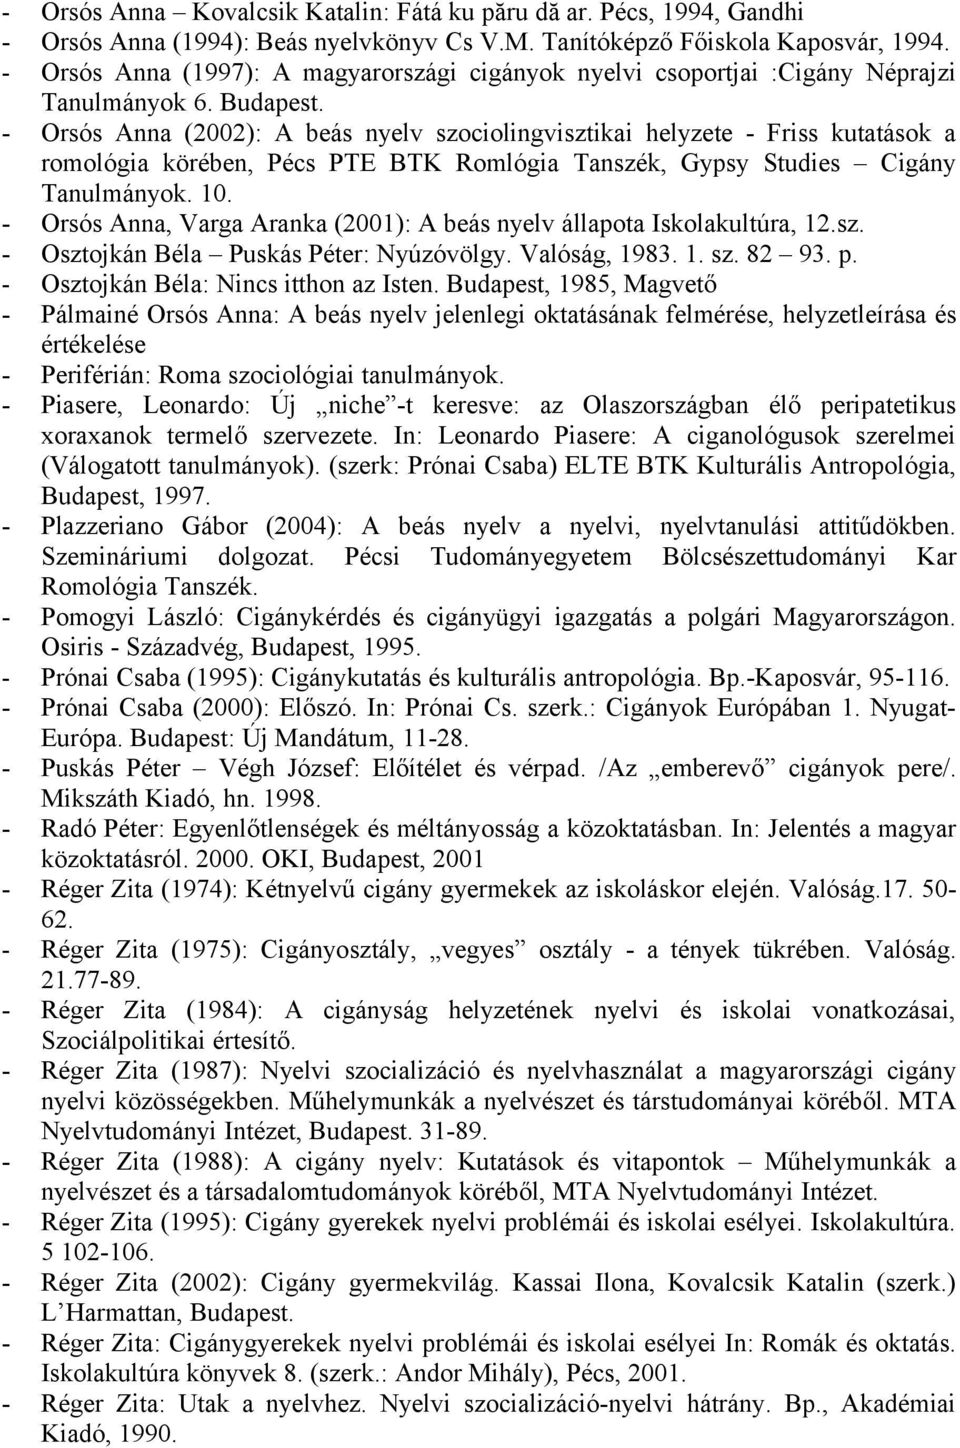 - Orsós Anna (2002): A beás nyelv szociolingvisztikai helyzete - Friss kutatások a romológia körében, Pécs PTE BTK Romlógia Tanszék, Gypsy Studies Cigány Tanulmányok. 10.